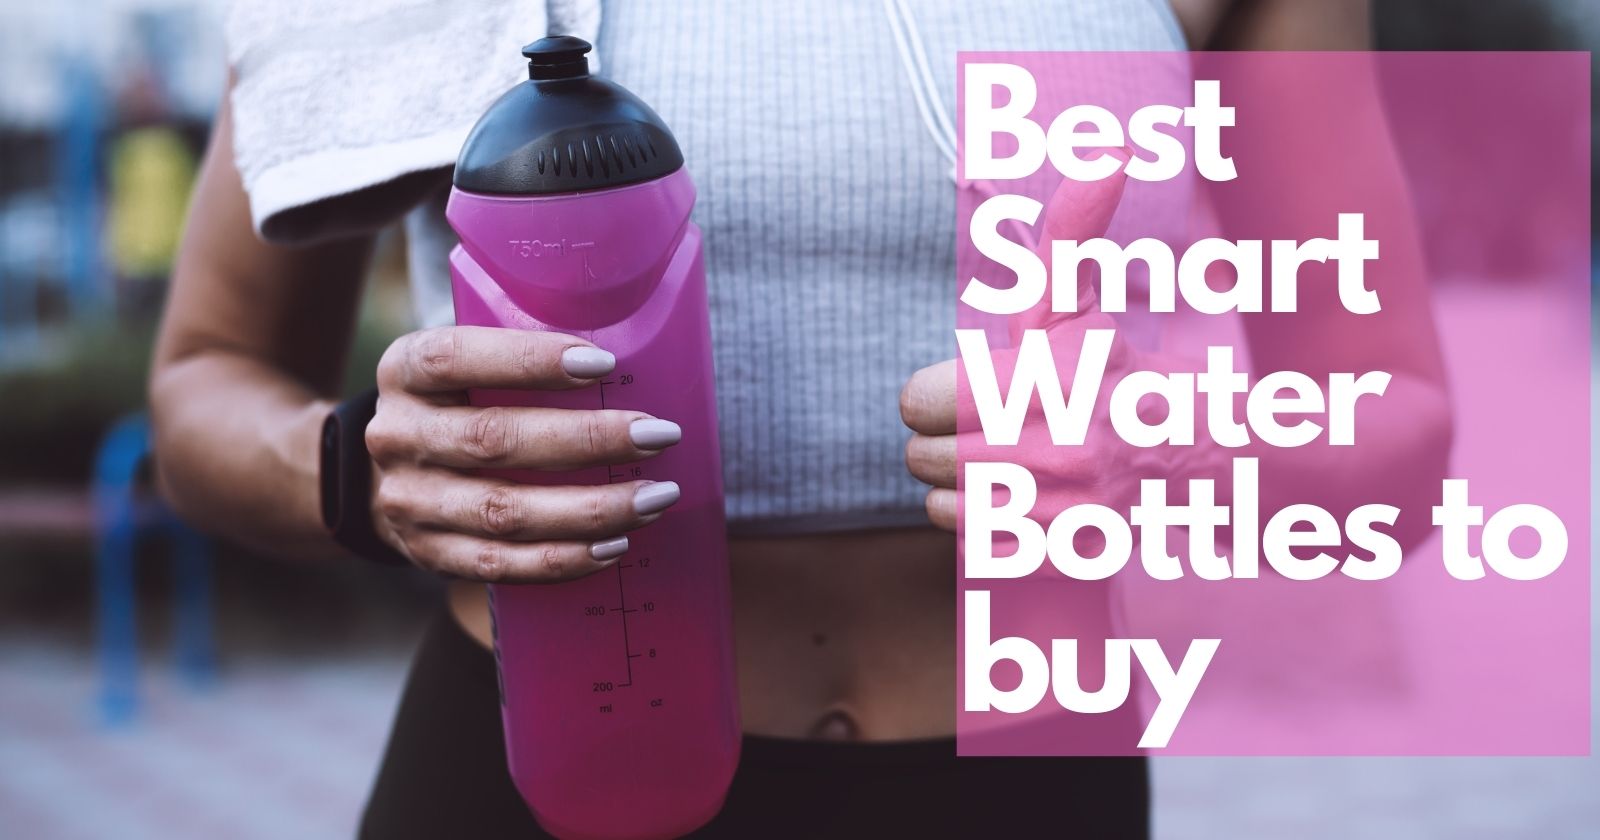 Best Smart Water Bottles to Buy